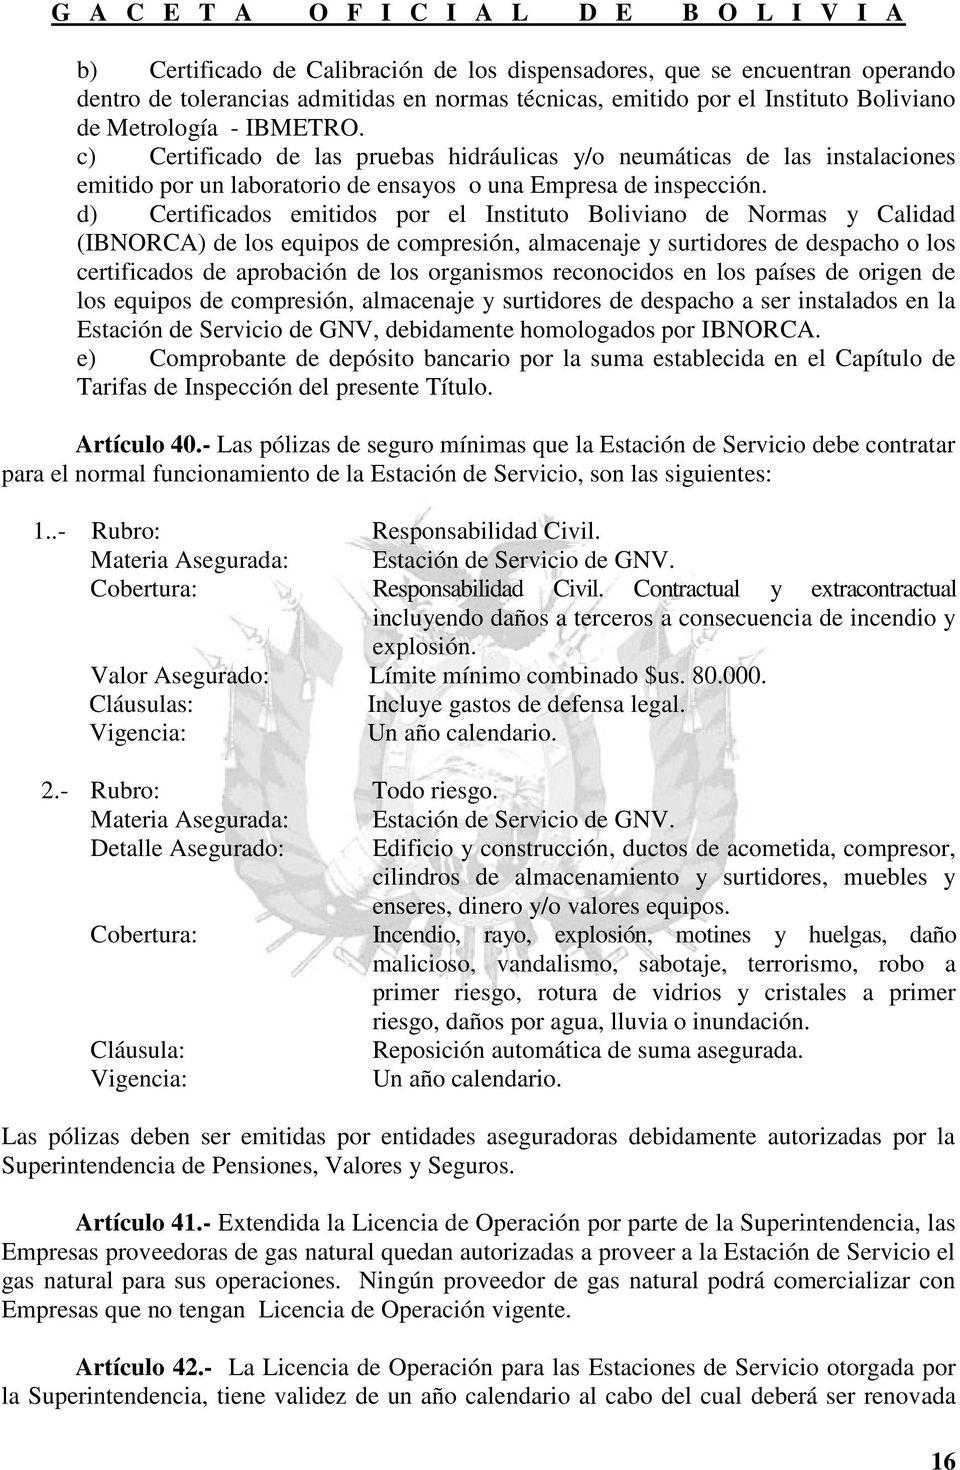 d) Certificados emitidos por el Instituto Boliviano de Normas y Calidad (IBNORCA) de los equipos de compresión, almacenaje y surtidores de despacho o los certificados de aprobación de los organismos